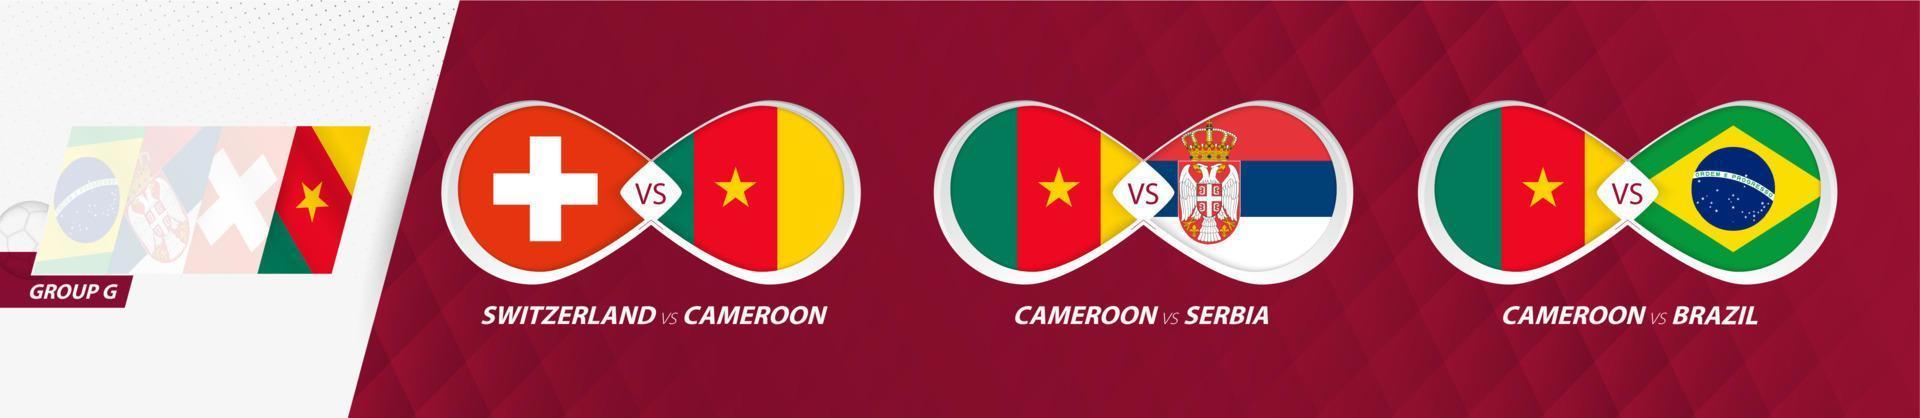 matchs de l'équipe nationale du cameroun dans le groupe g, compétition de football 2022, icône de tous les jeux en phase de groupes. vecteur